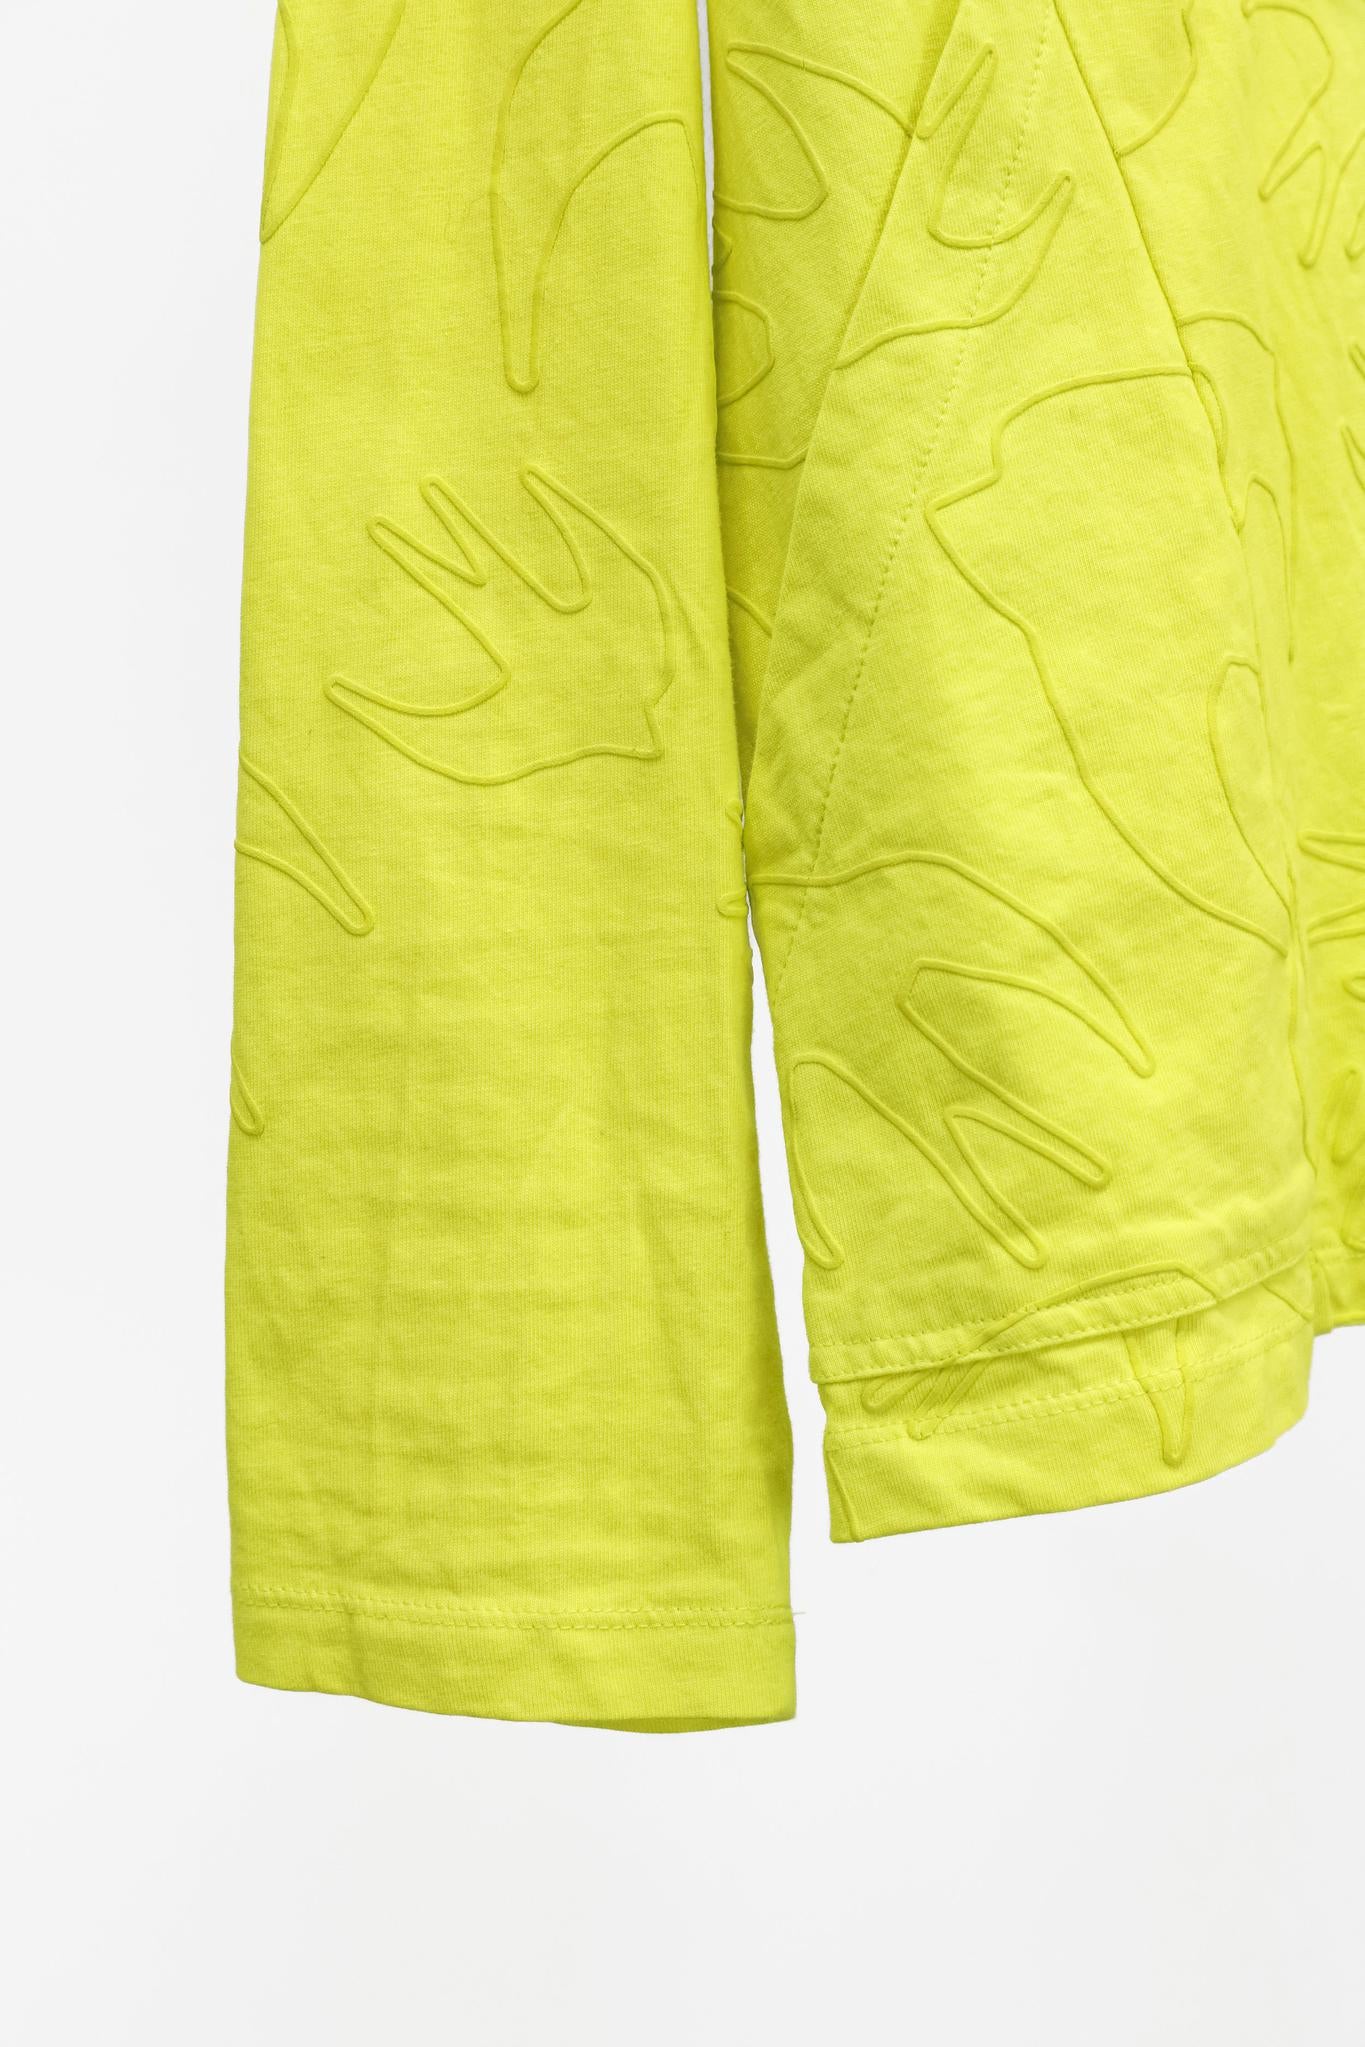 McQ by Alexander McQueen Neon Yellow Swallow Sweatshirt